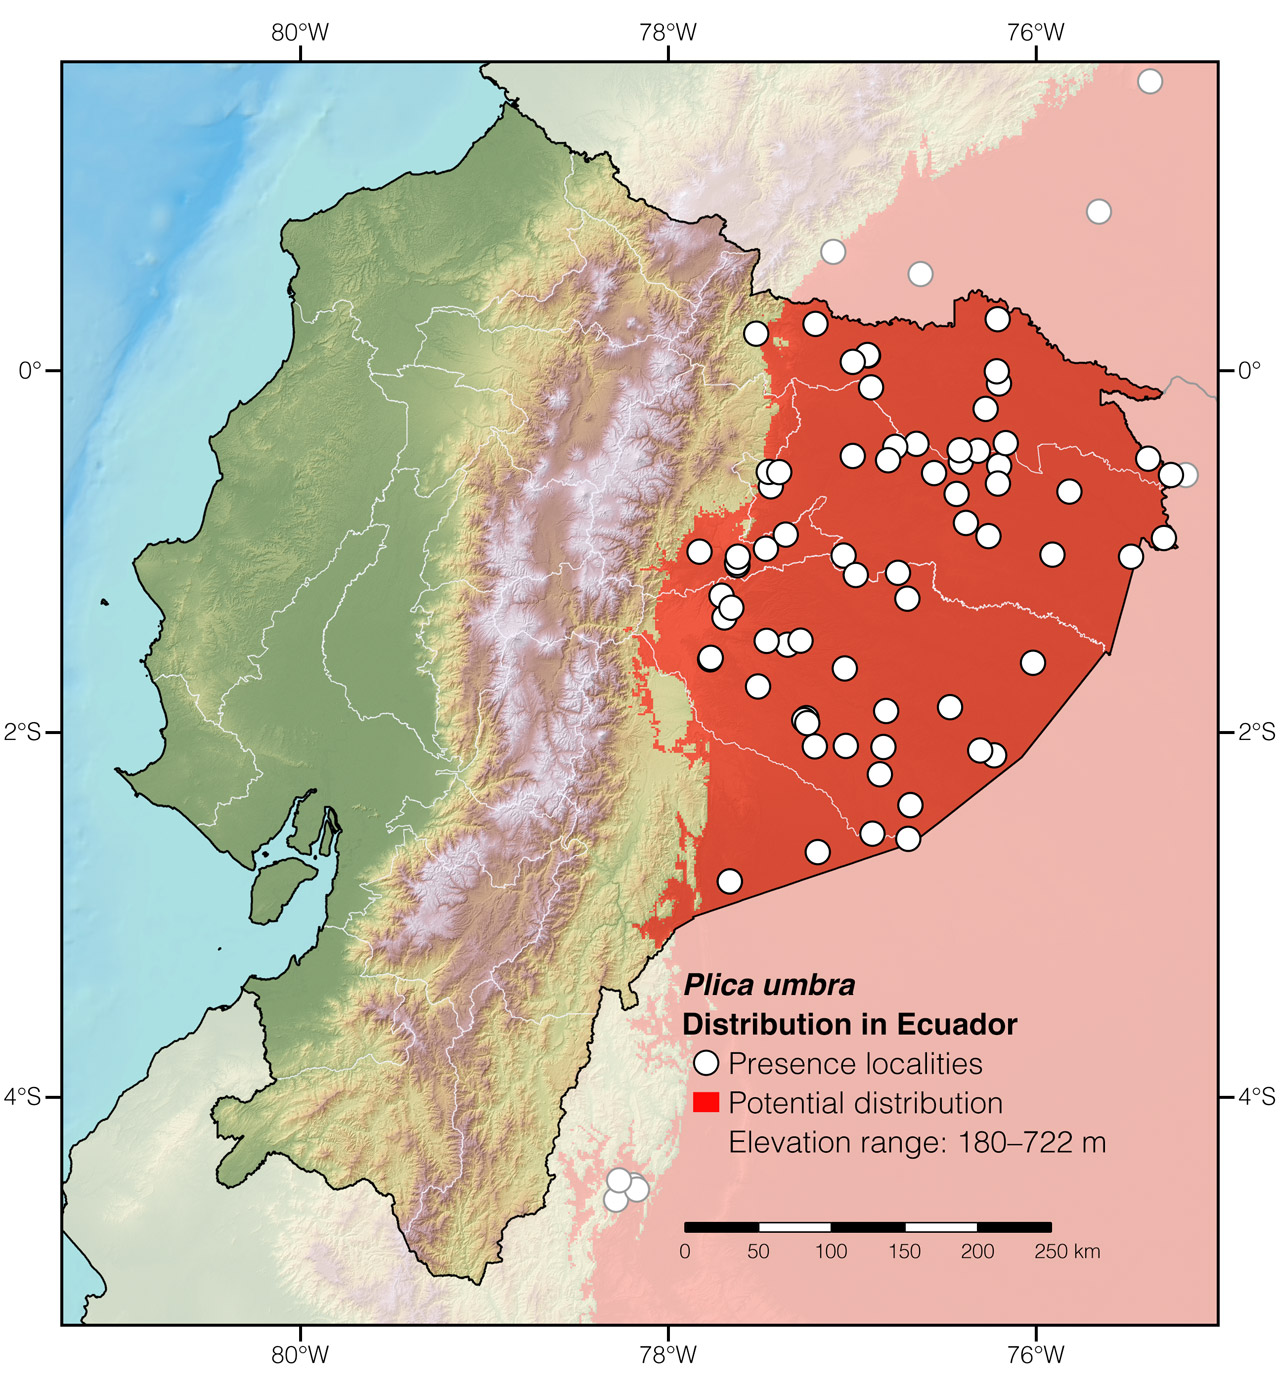 Distribution of Plica umbra in Ecuador